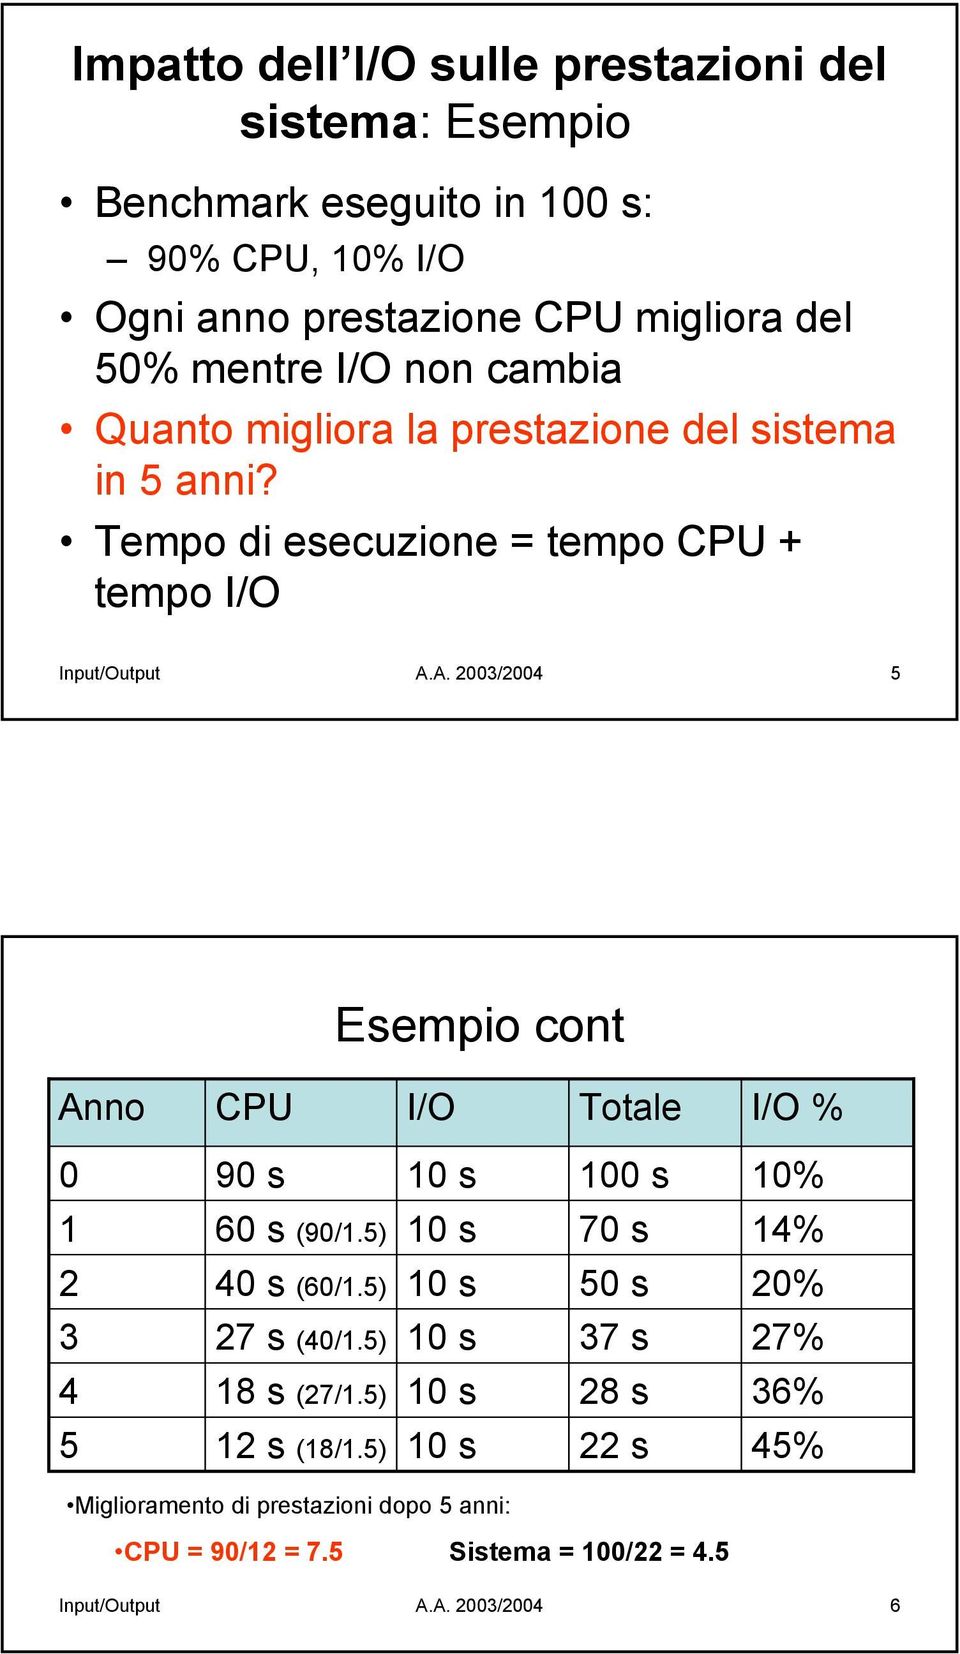 A. 2003/2004 5 Esempio cont Anno CPU I/O Totale I/O % 0 90 s 10 s 100 s 10% 1 60 s (90/1.5) 10 s 70 s 14% 2 40 s (60/1.5) 10 s 50 s 20% 3 27 s (40/1.